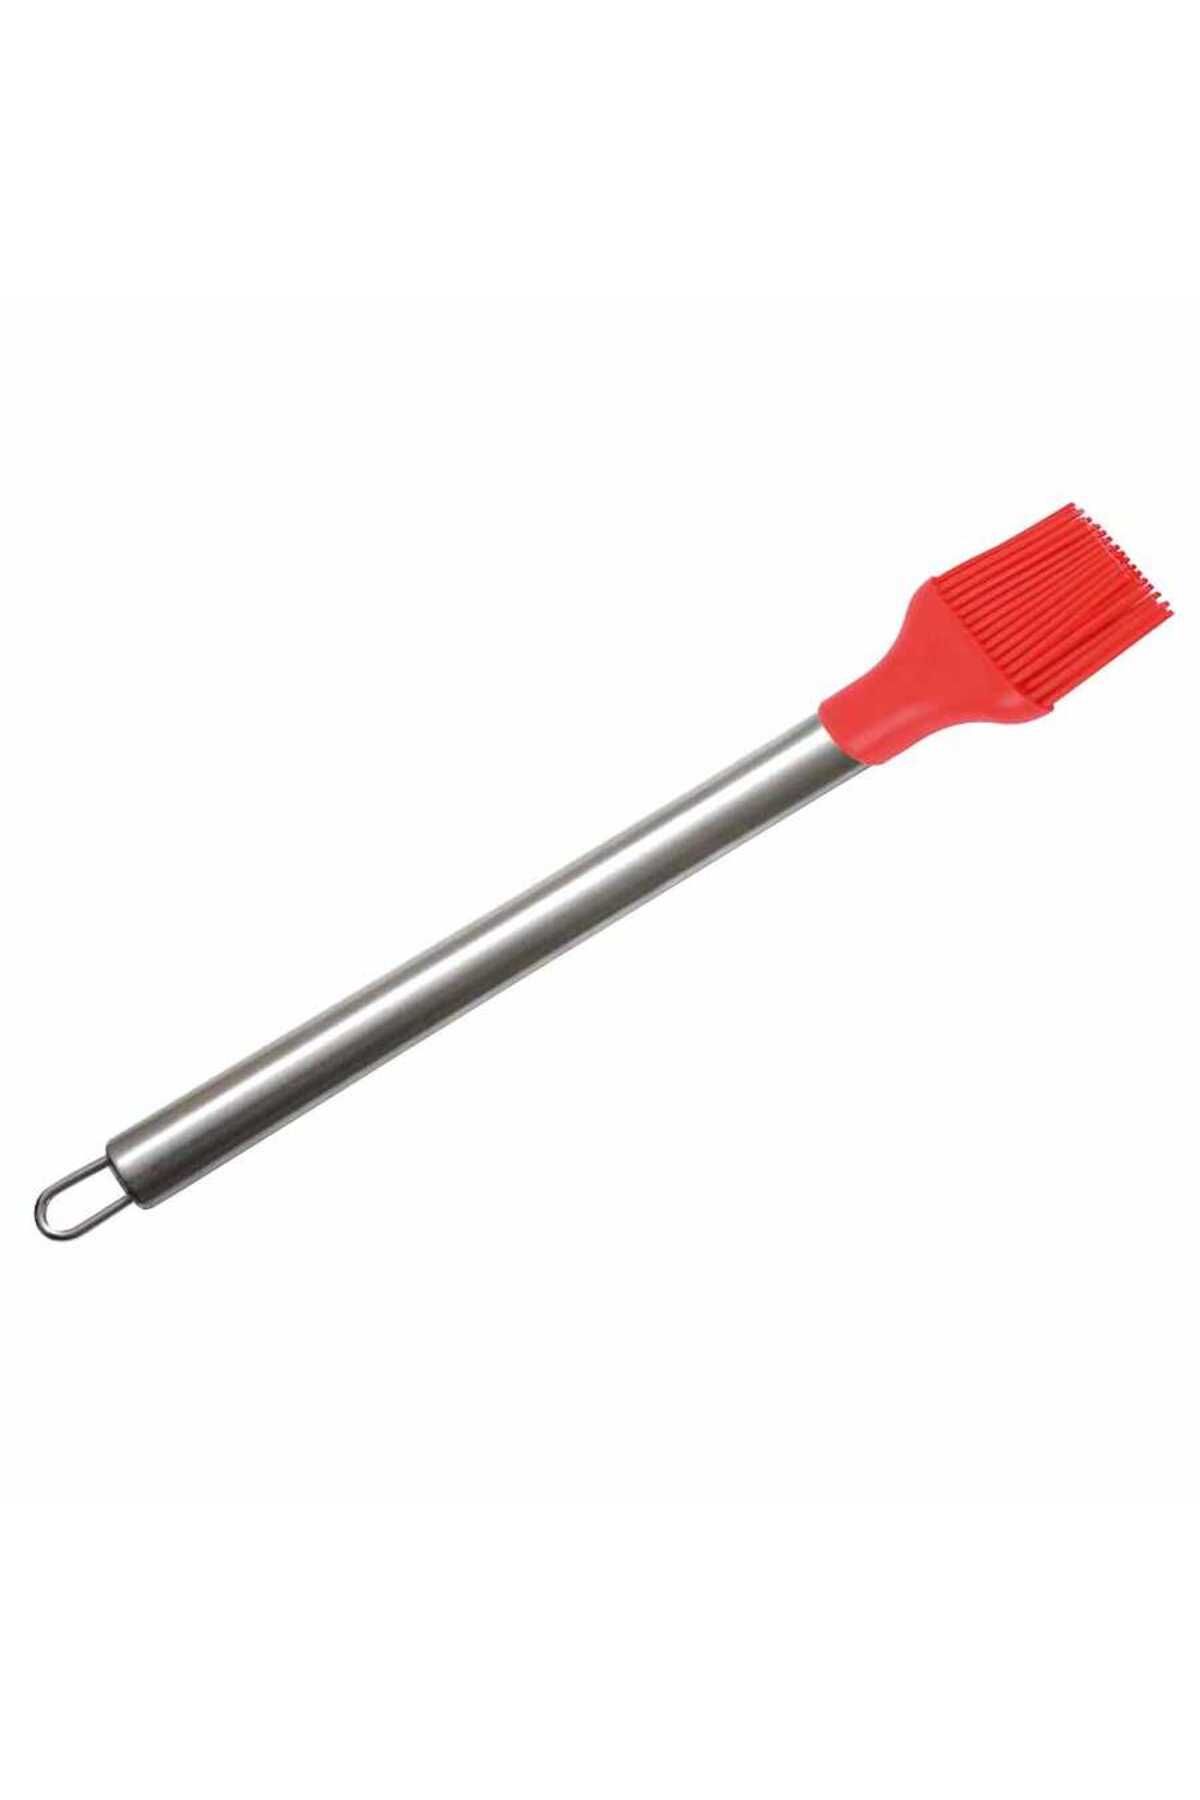 Epinox Fırça Silikon Çelik Sap Kırmızı (CSK-25)